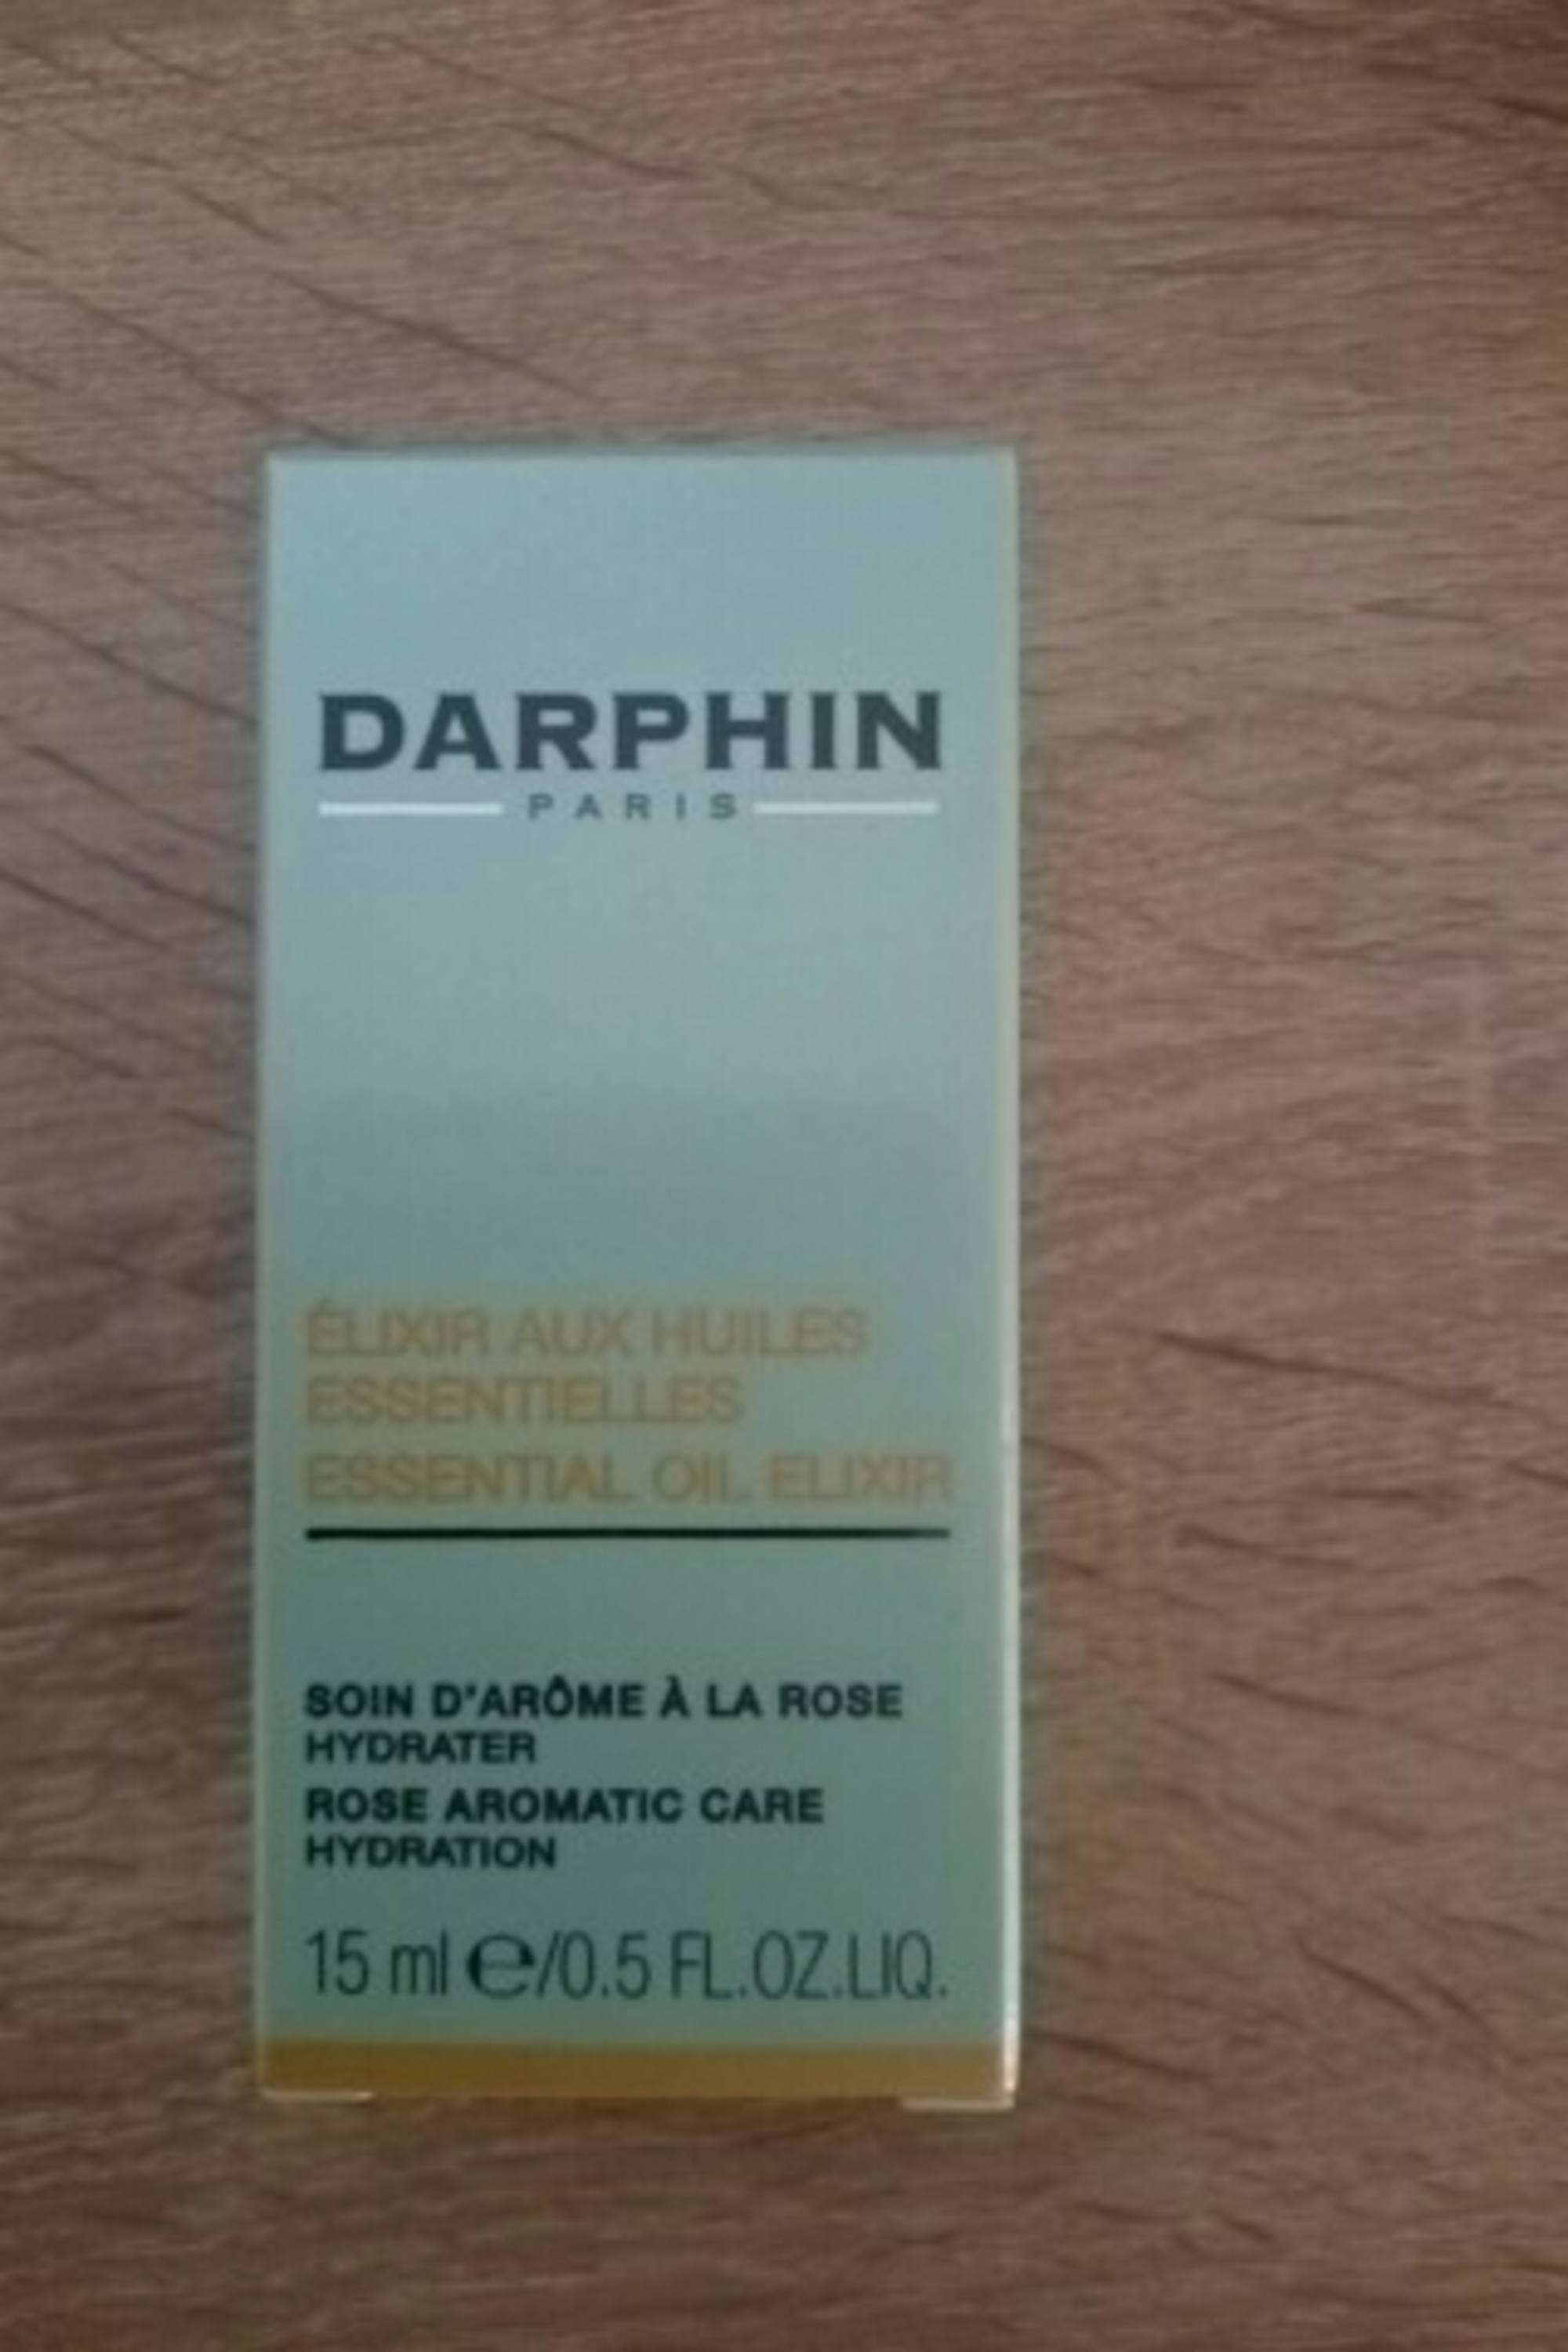 DARPHIN - Élixir aux huiles essentielles - Soin d'arôme à la rose hydrater